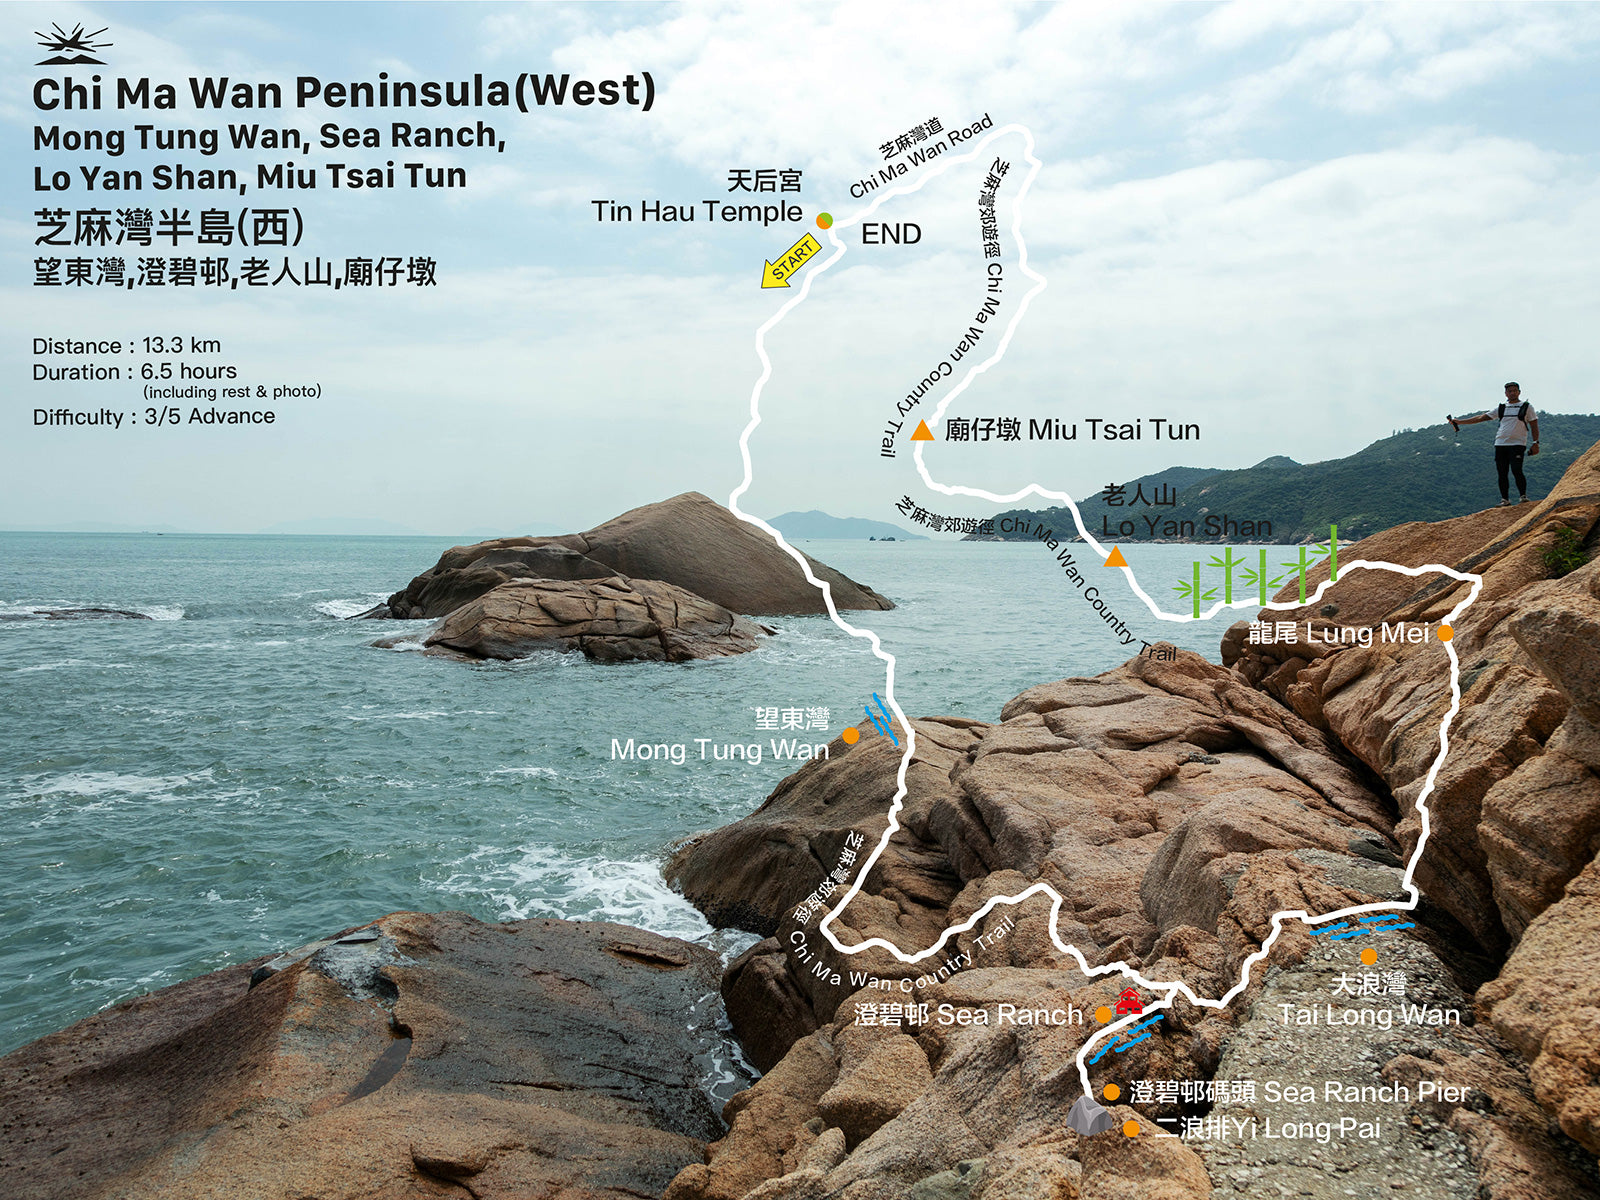 Chi Ma Wan Peninsula (West) | Mong Tung Wan, Sea Ranch, Lo Yan Shan, Miu Tsai Tun